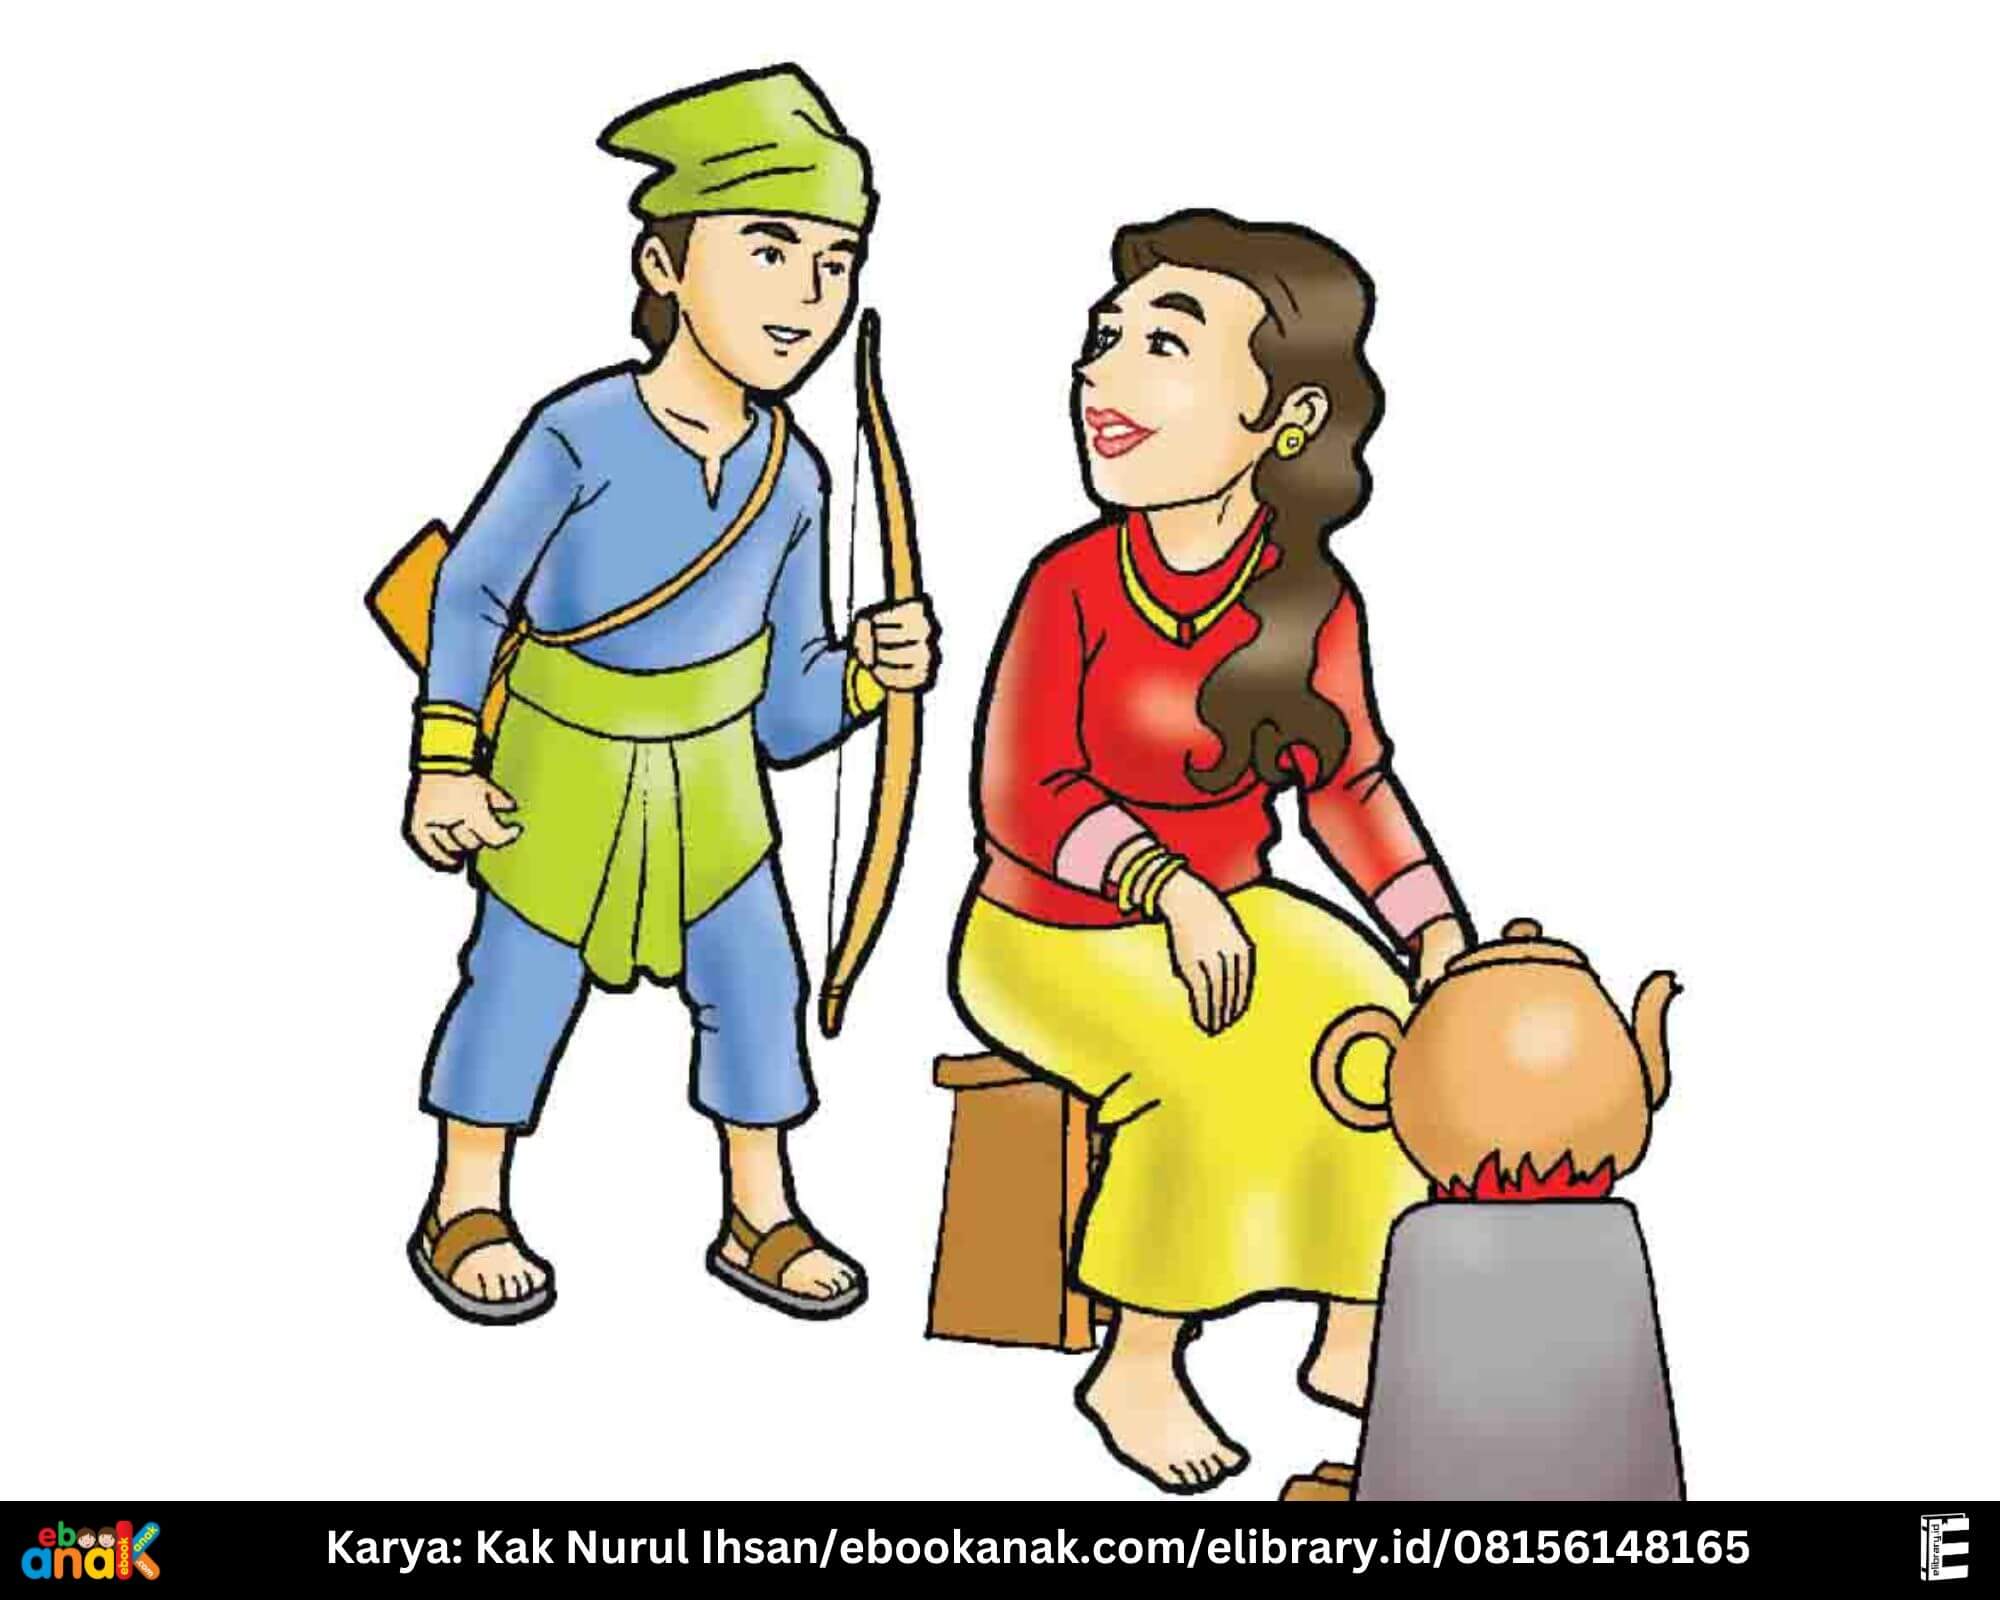 Putri yang Dijilati Kerbau; Cerita Rakyat Nusantara dari Sulawesi Tengah (Kak Nurul Ihsan/ebookanak.com)